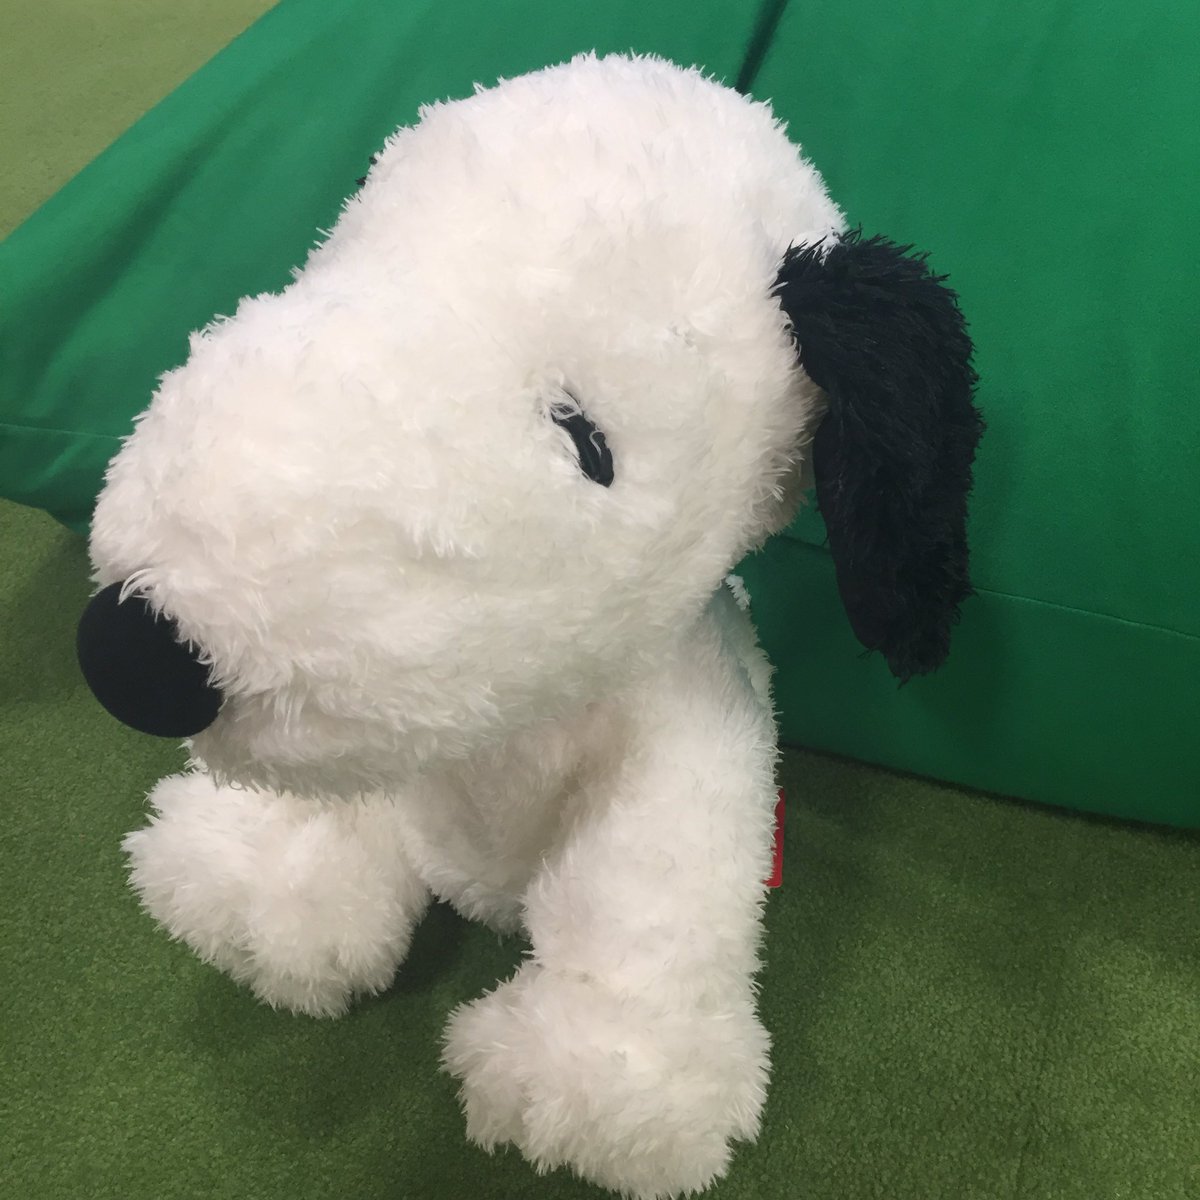 公式 タイトーステーション アリオ柏店 A Twitter スヌーピー の メガジャンボふわさらぬいぐるみ がが本日入荷で稼働しております 可愛い スヌーピーです 犬好きなしっぽは見た瞬間に悶えてしまいました D この可愛さは無敵ですよー アリオ柏 Snoopy